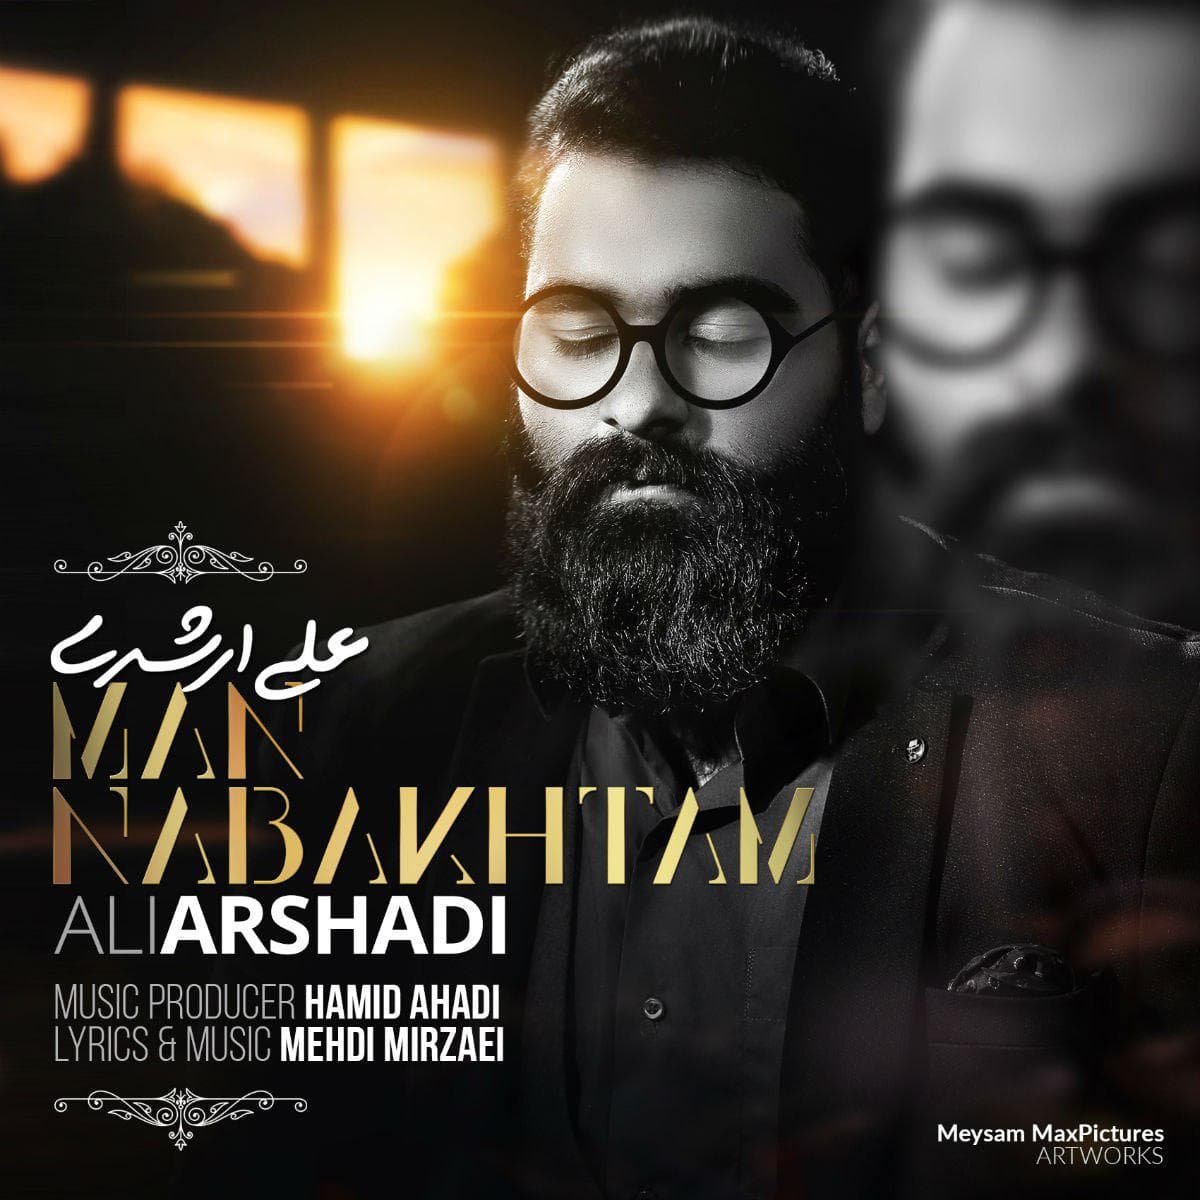 Ali Arshadi Man Nabakhtam 